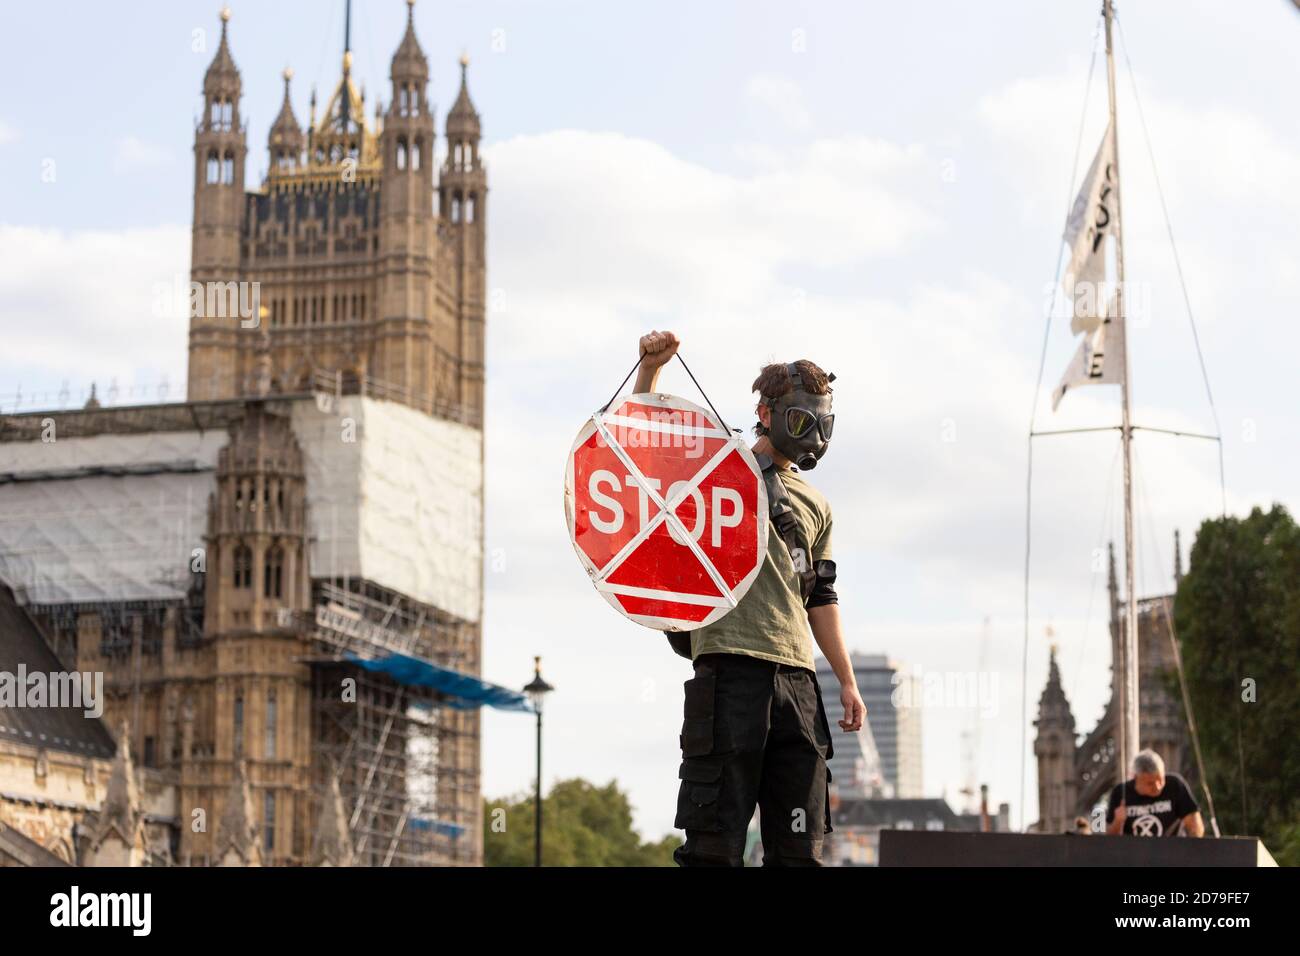 Manifestant dans un masque à gaz portant un panneau d'arrêt lors d'une manifestation de rébellion d'extinction, Parliament Square, Londres, 10 septembre 2020 Banque D'Images